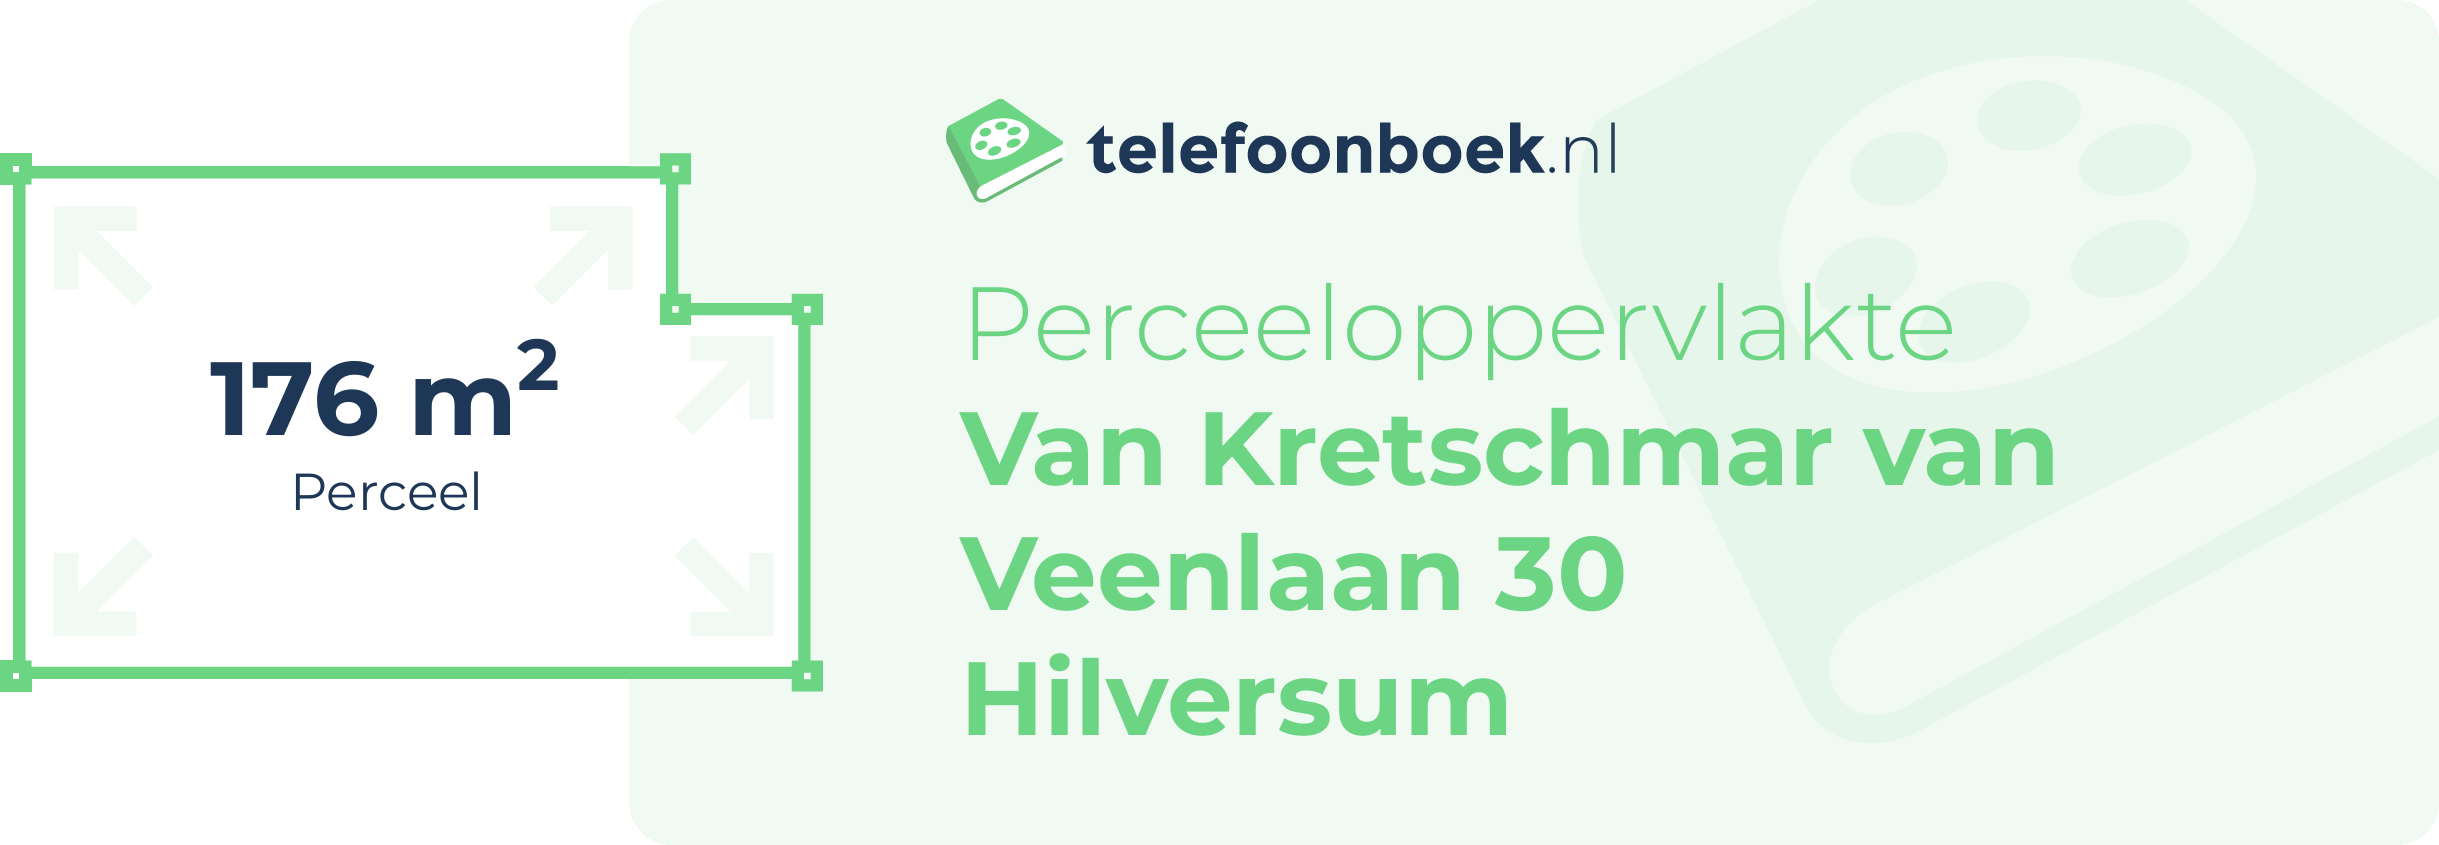 Perceeloppervlakte Van Kretschmar Van Veenlaan 30 Hilversum